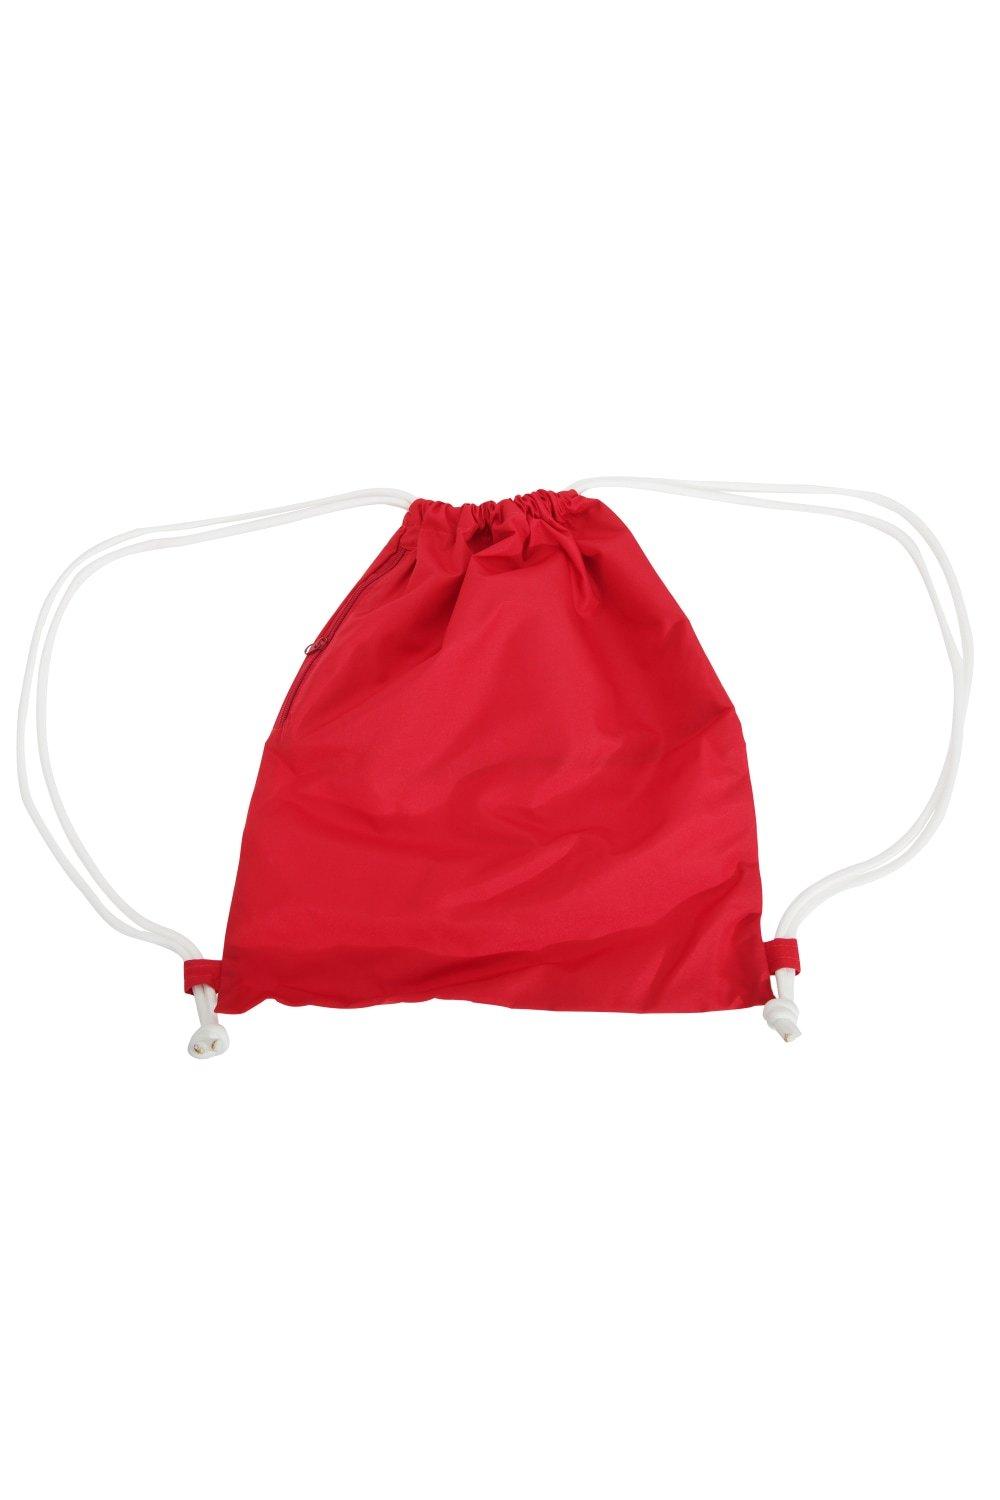 Сумка Icon на шнурке / Gymsac Bagbase, красный сумка urban gymsac на шнурке sol s красный